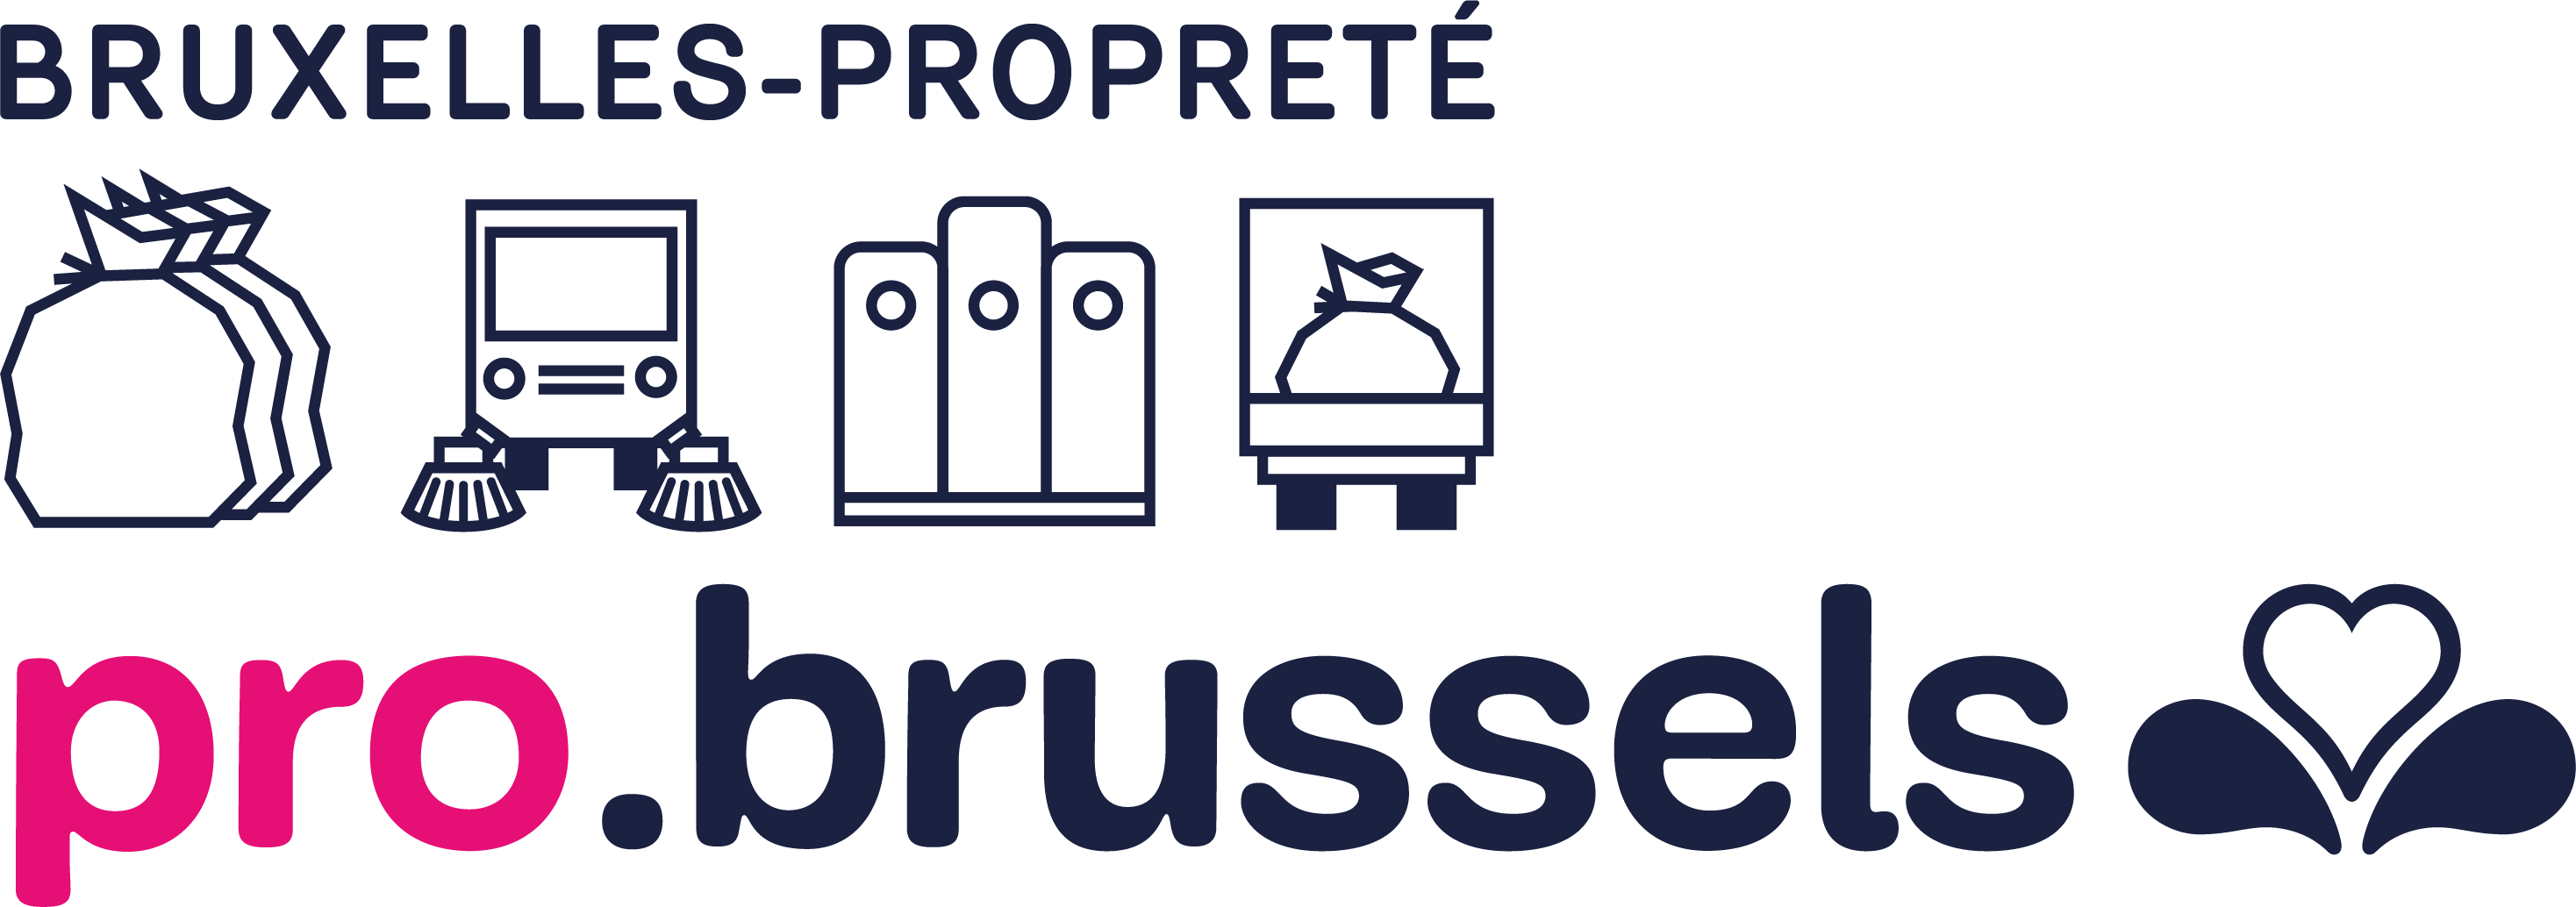 Logo Bruxelles-Propreté